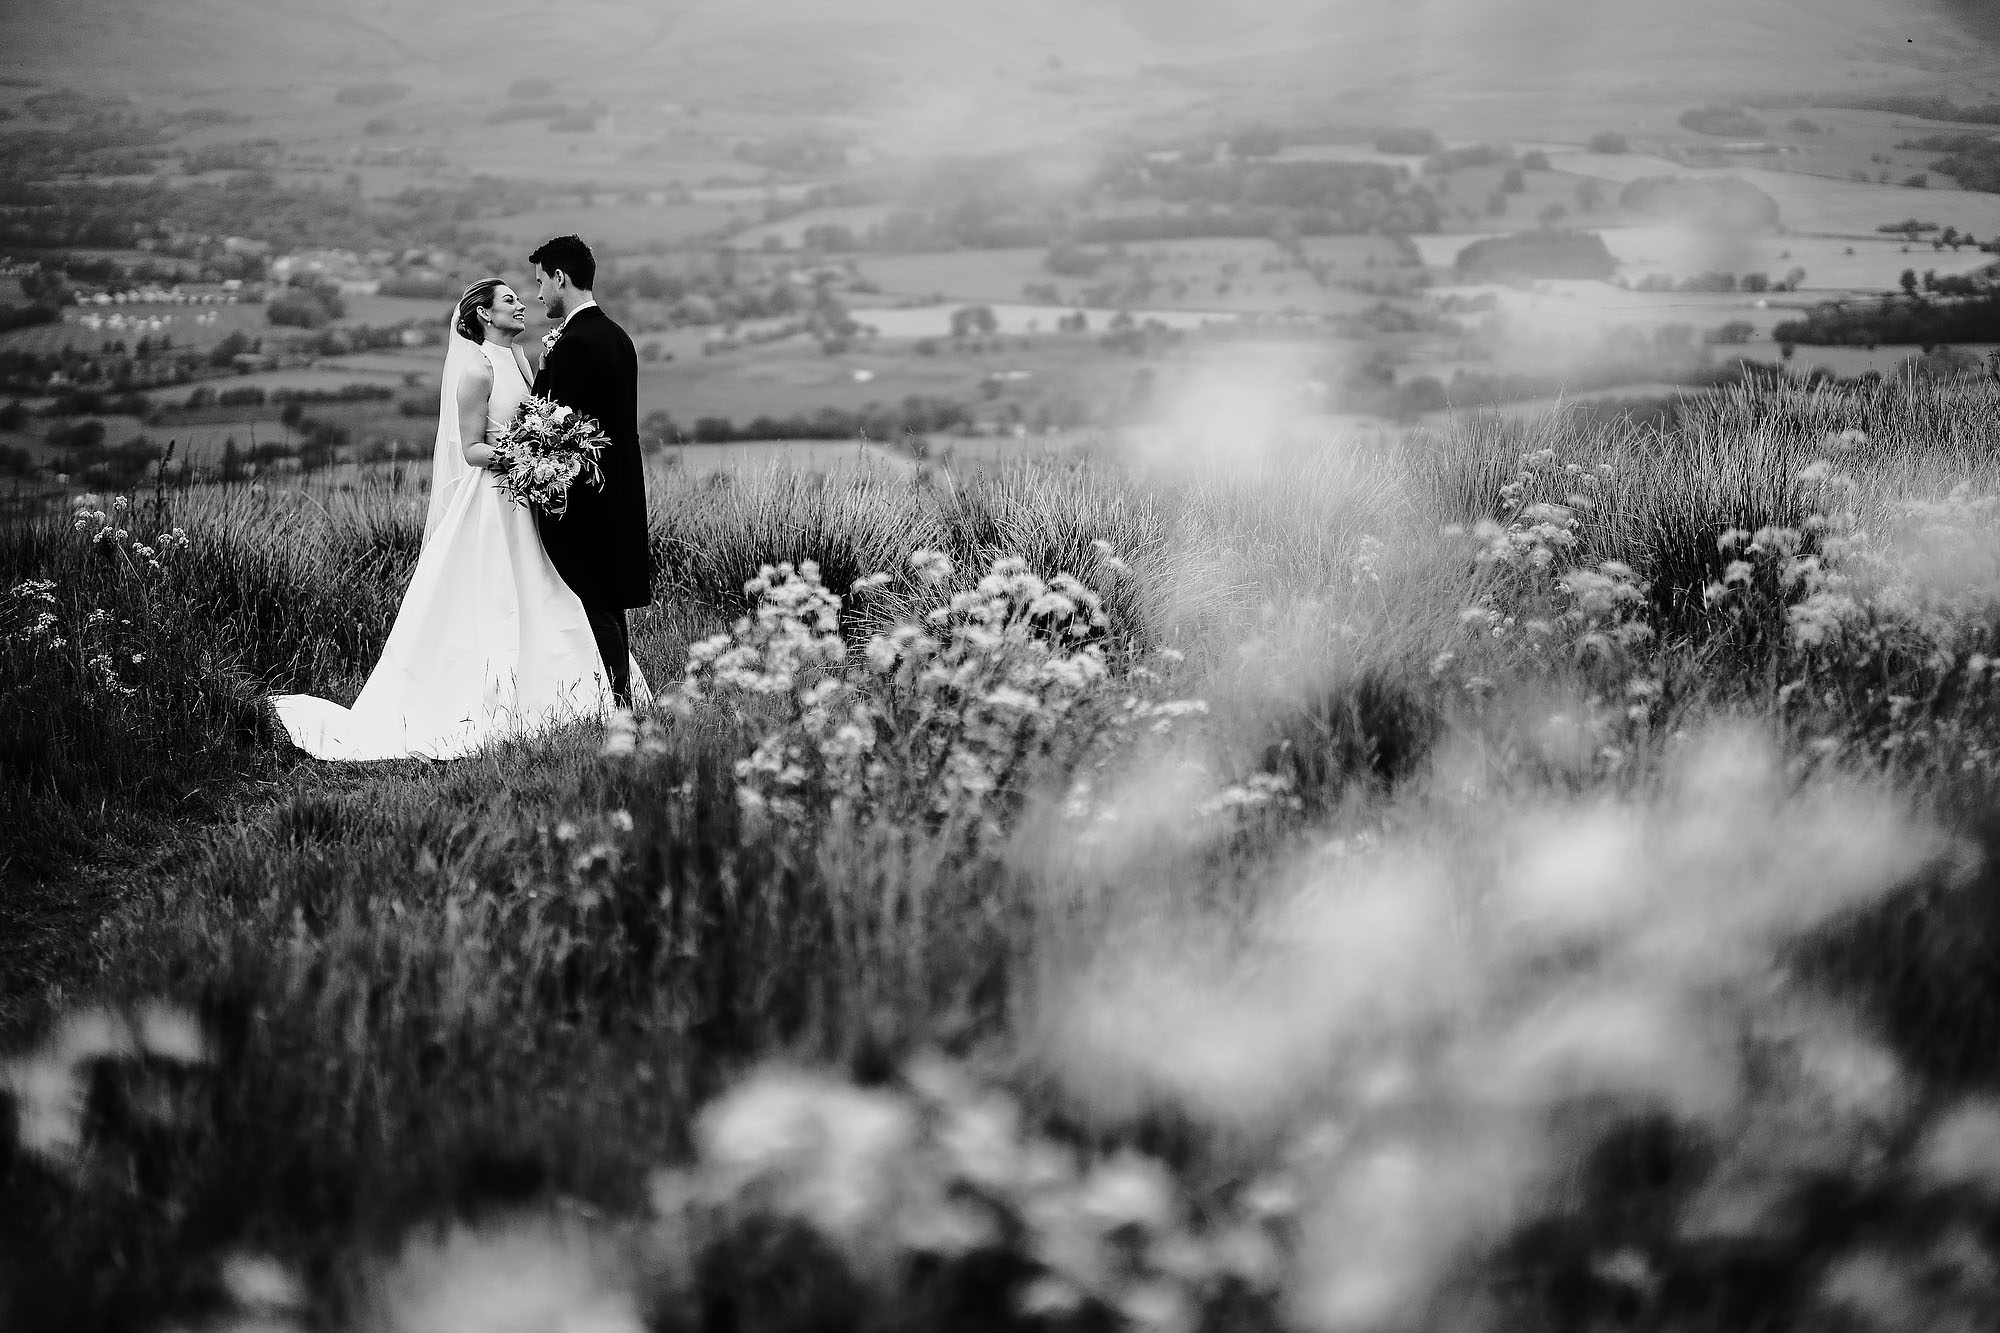 Destination wedding photographers cheshire uk - arj photography®